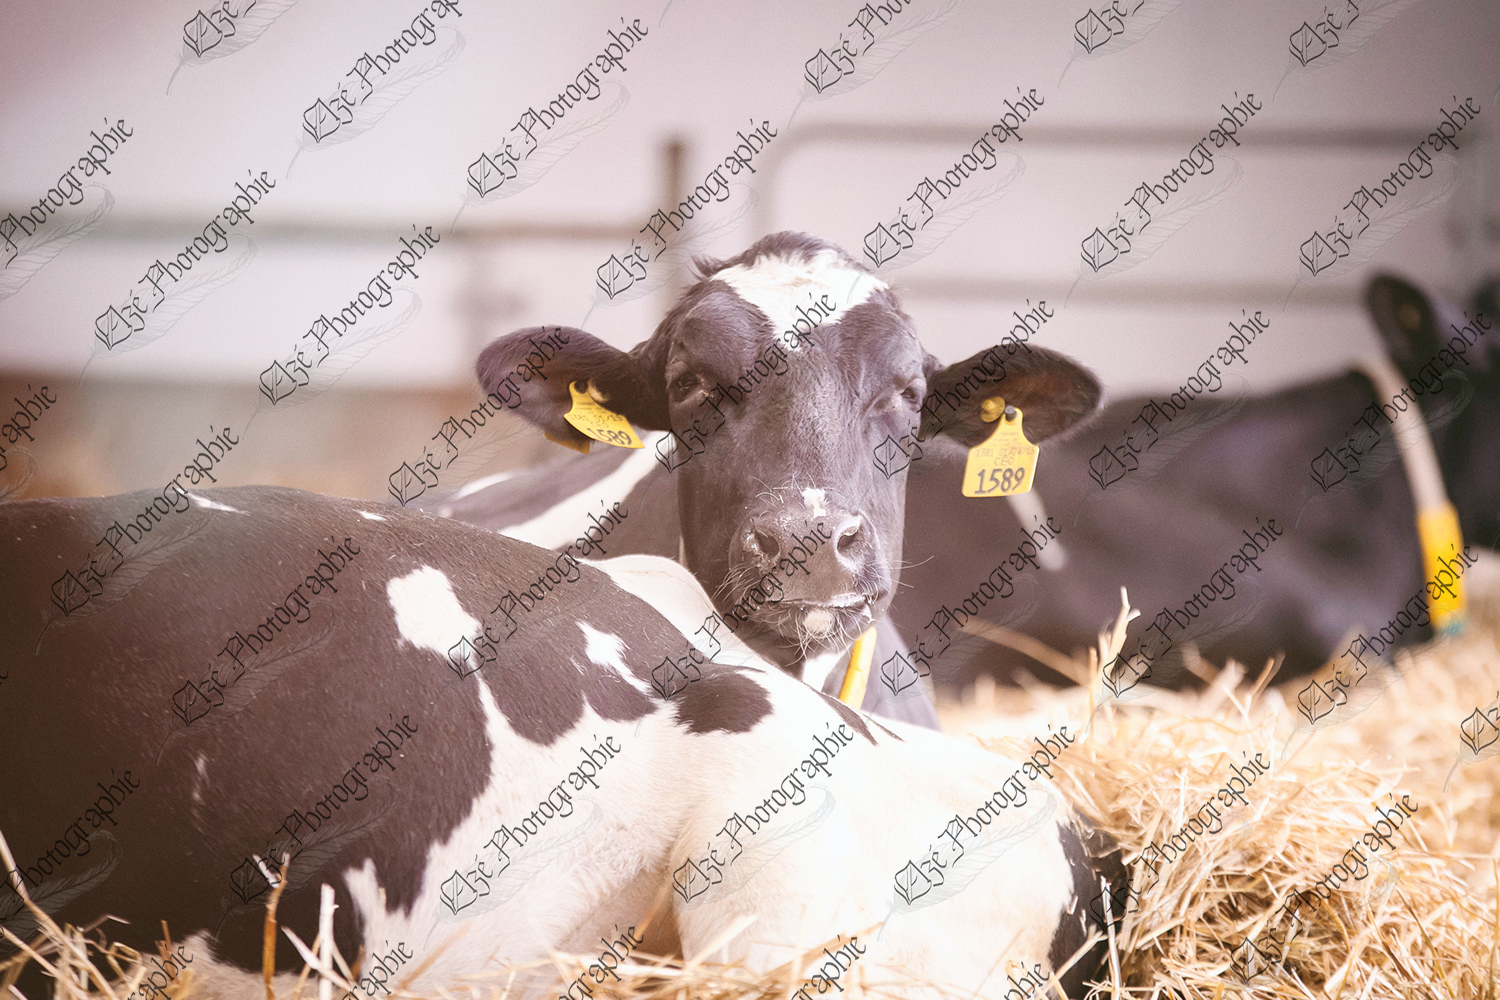 elze_photo_6092_vache_tranquille_ferme_resting_dairy_cow